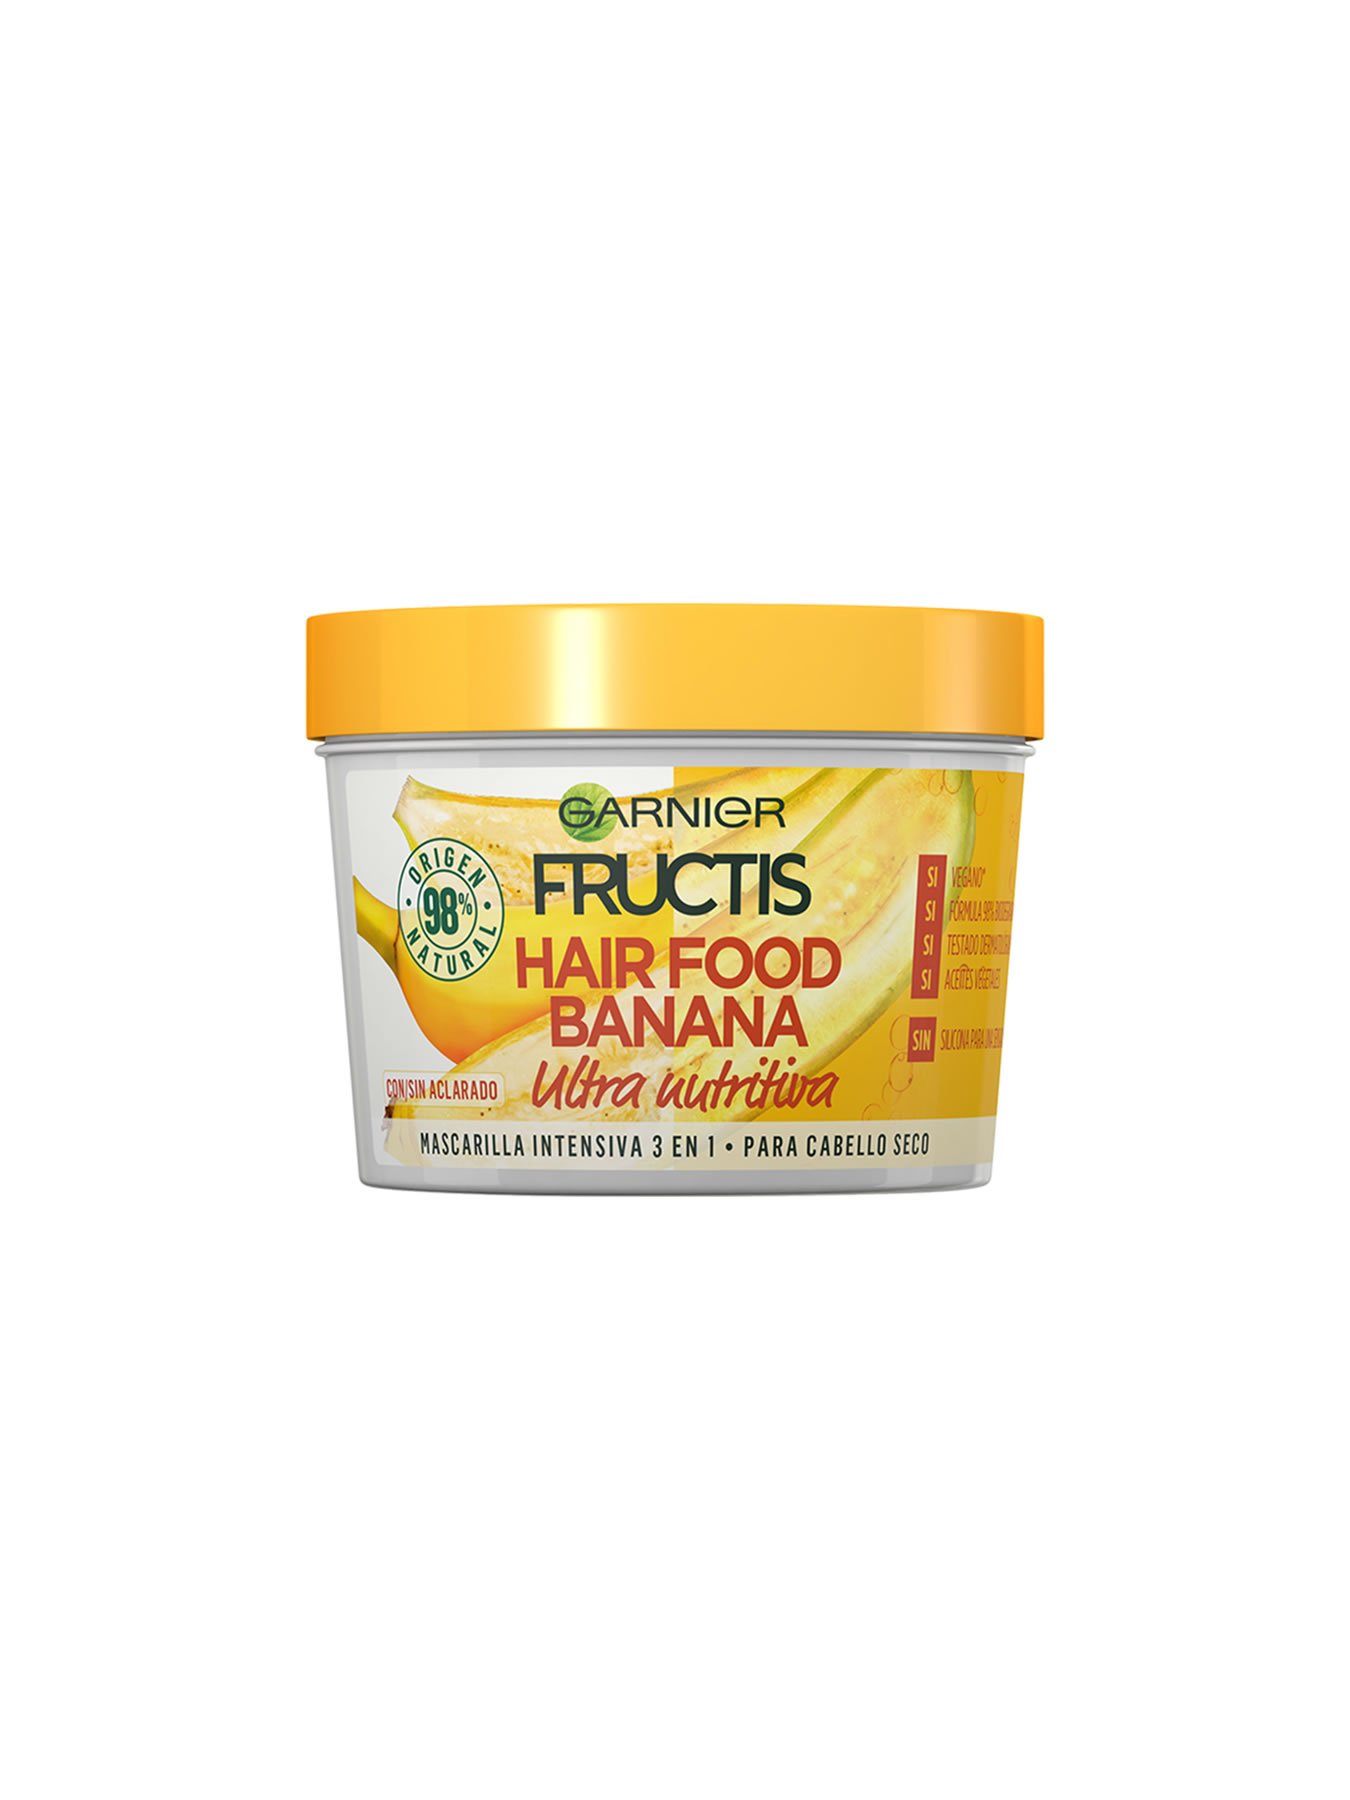 Hair Food Banana: Mascarilla de plátano el pelo 3 en 1 | Garnier